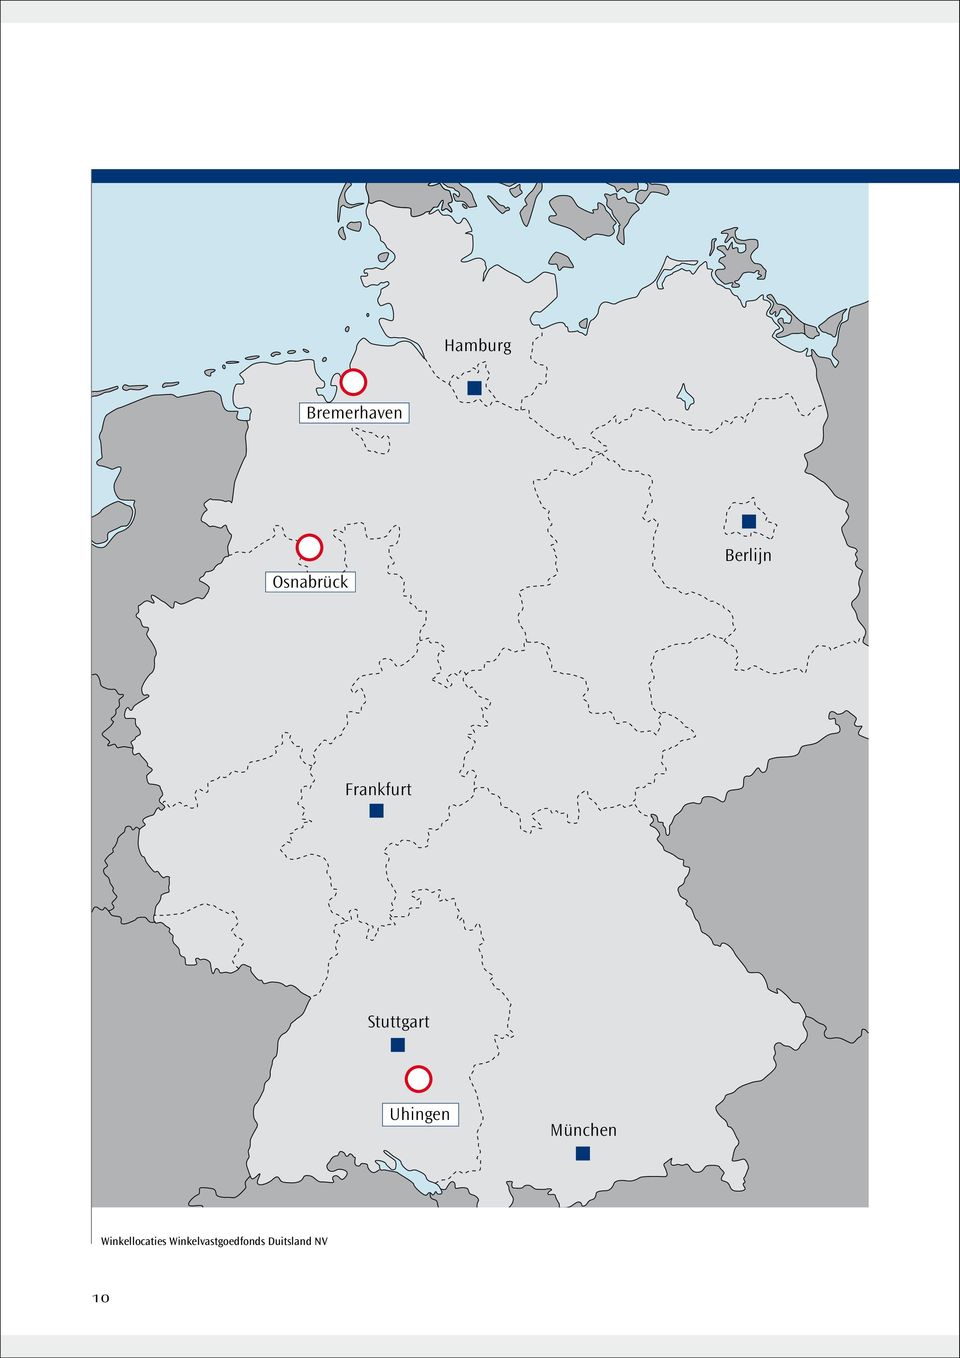 Uhingen München Winkellocaties